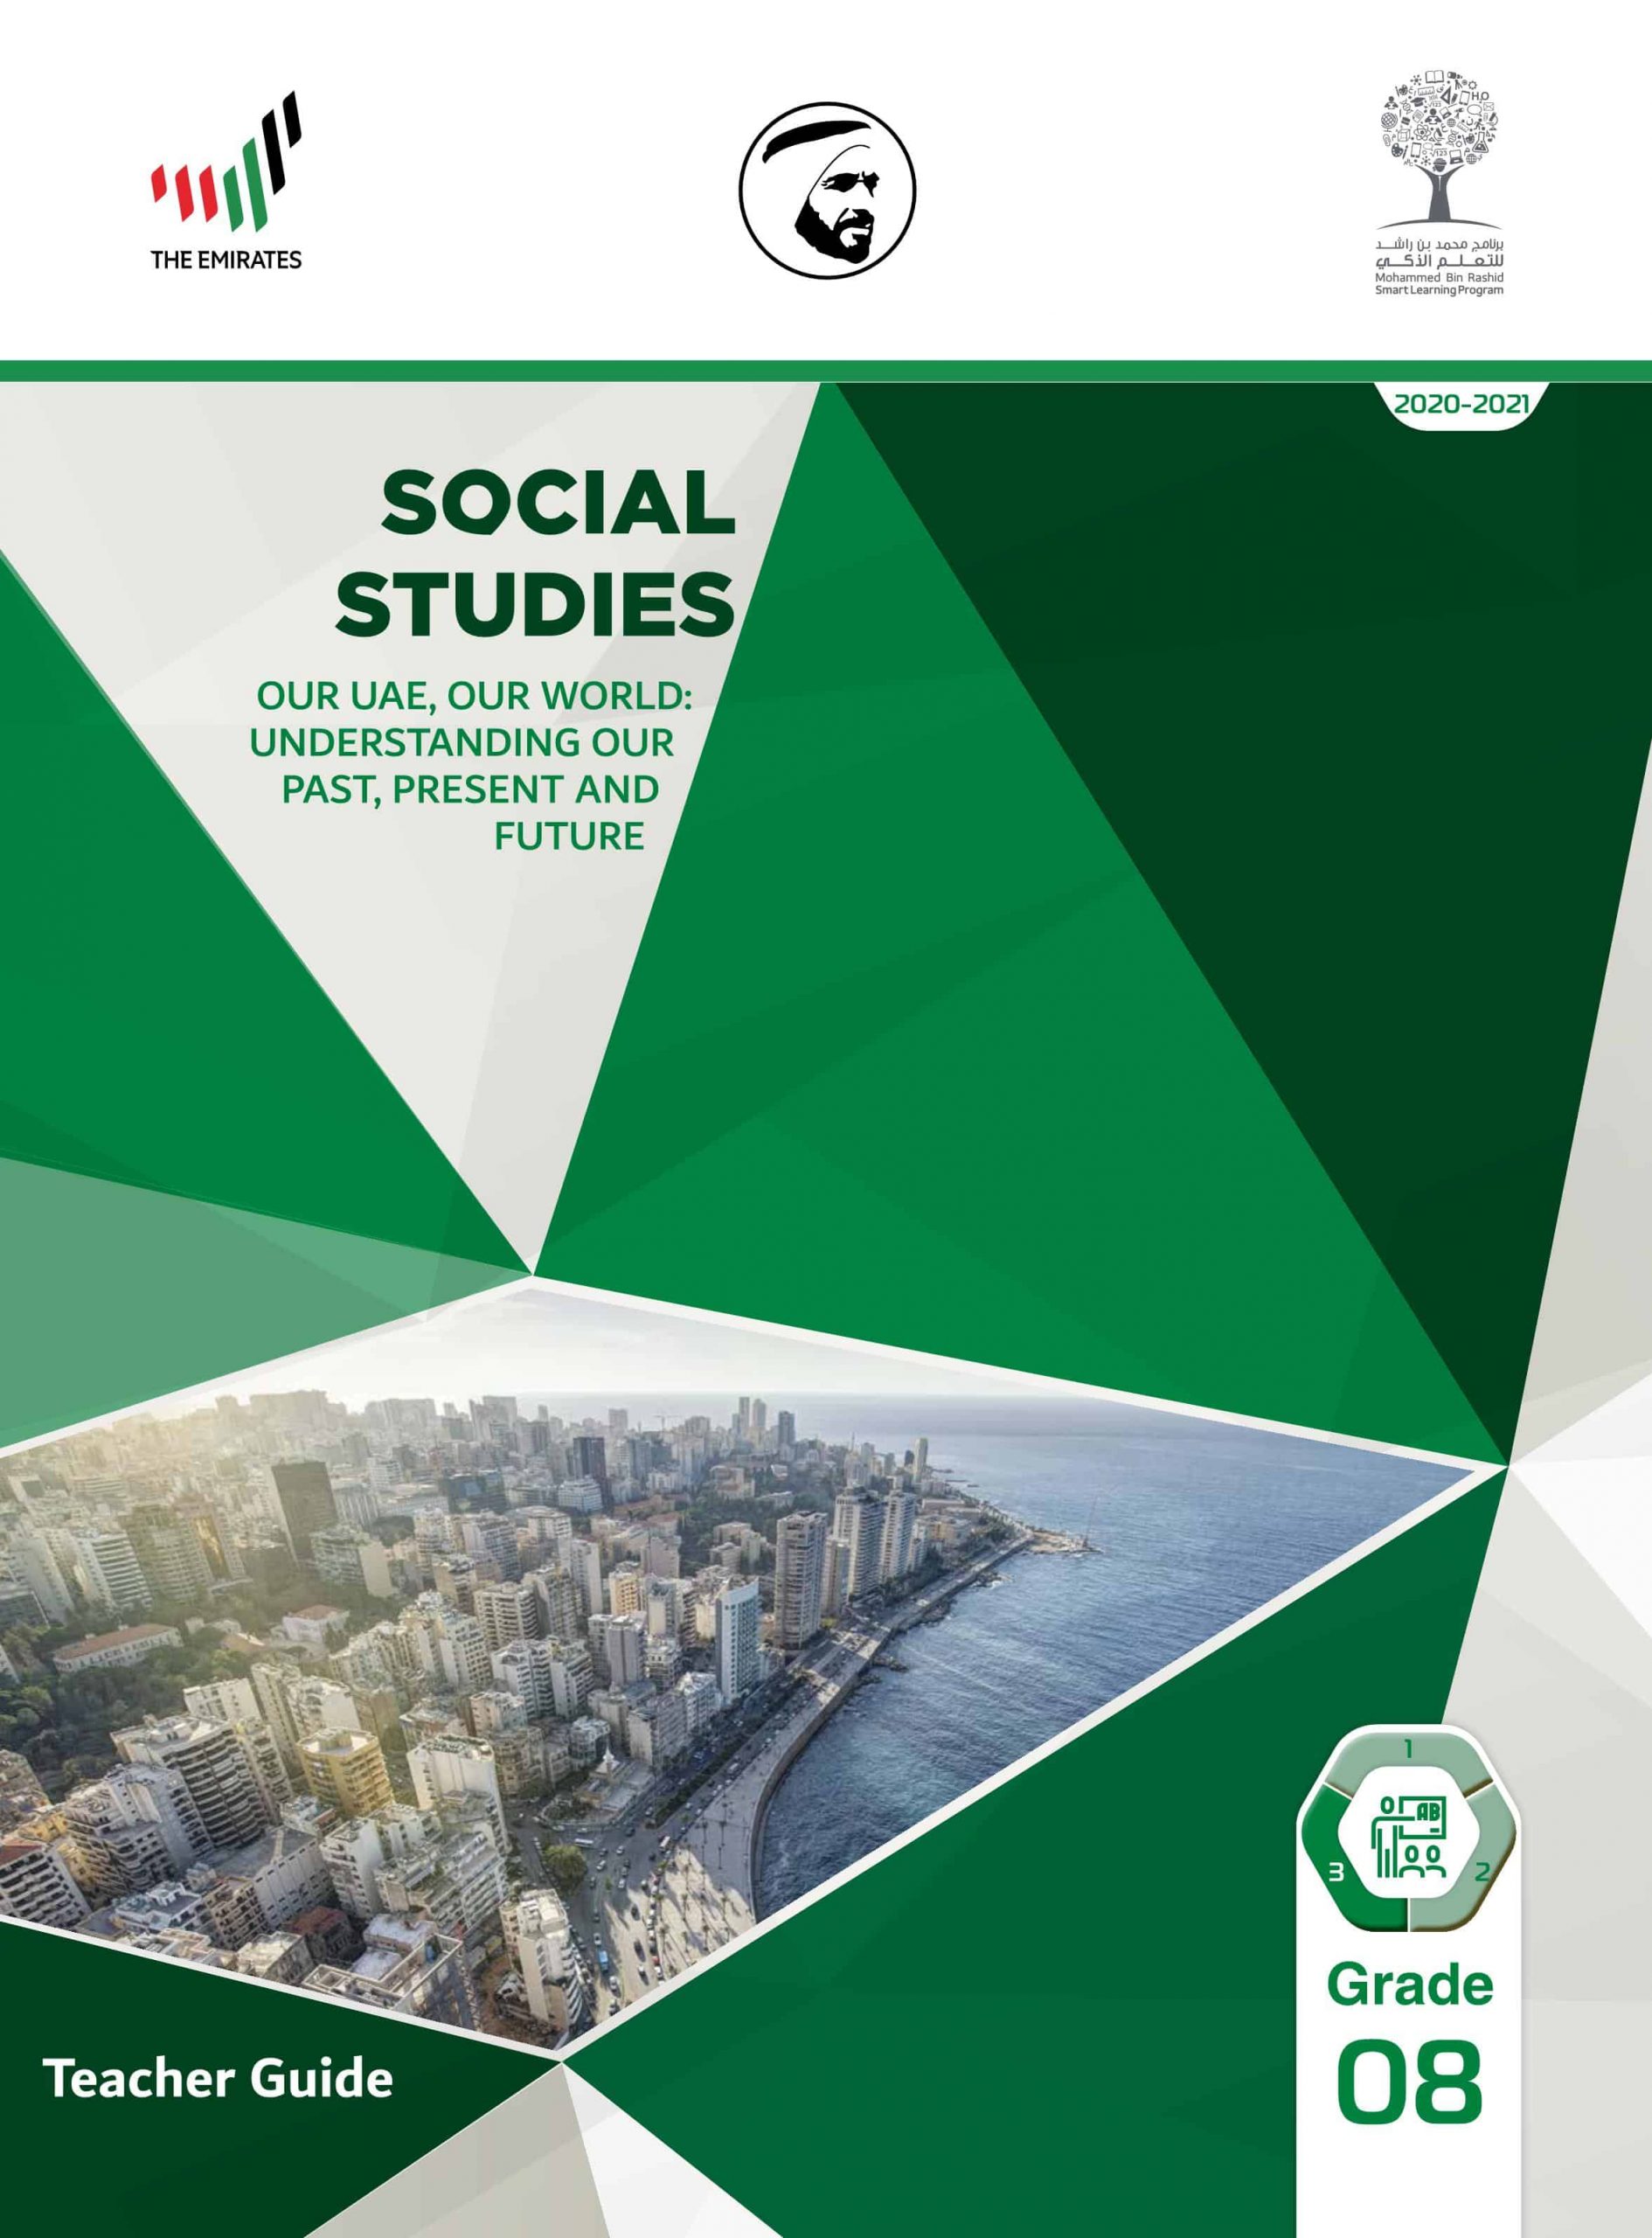 دليل المعلم بالإنجليزي الفصل الدراسي الثالث 2020-2021 الصف الثامن مادة الدراسات الإجتماعية والتربية الوطنية